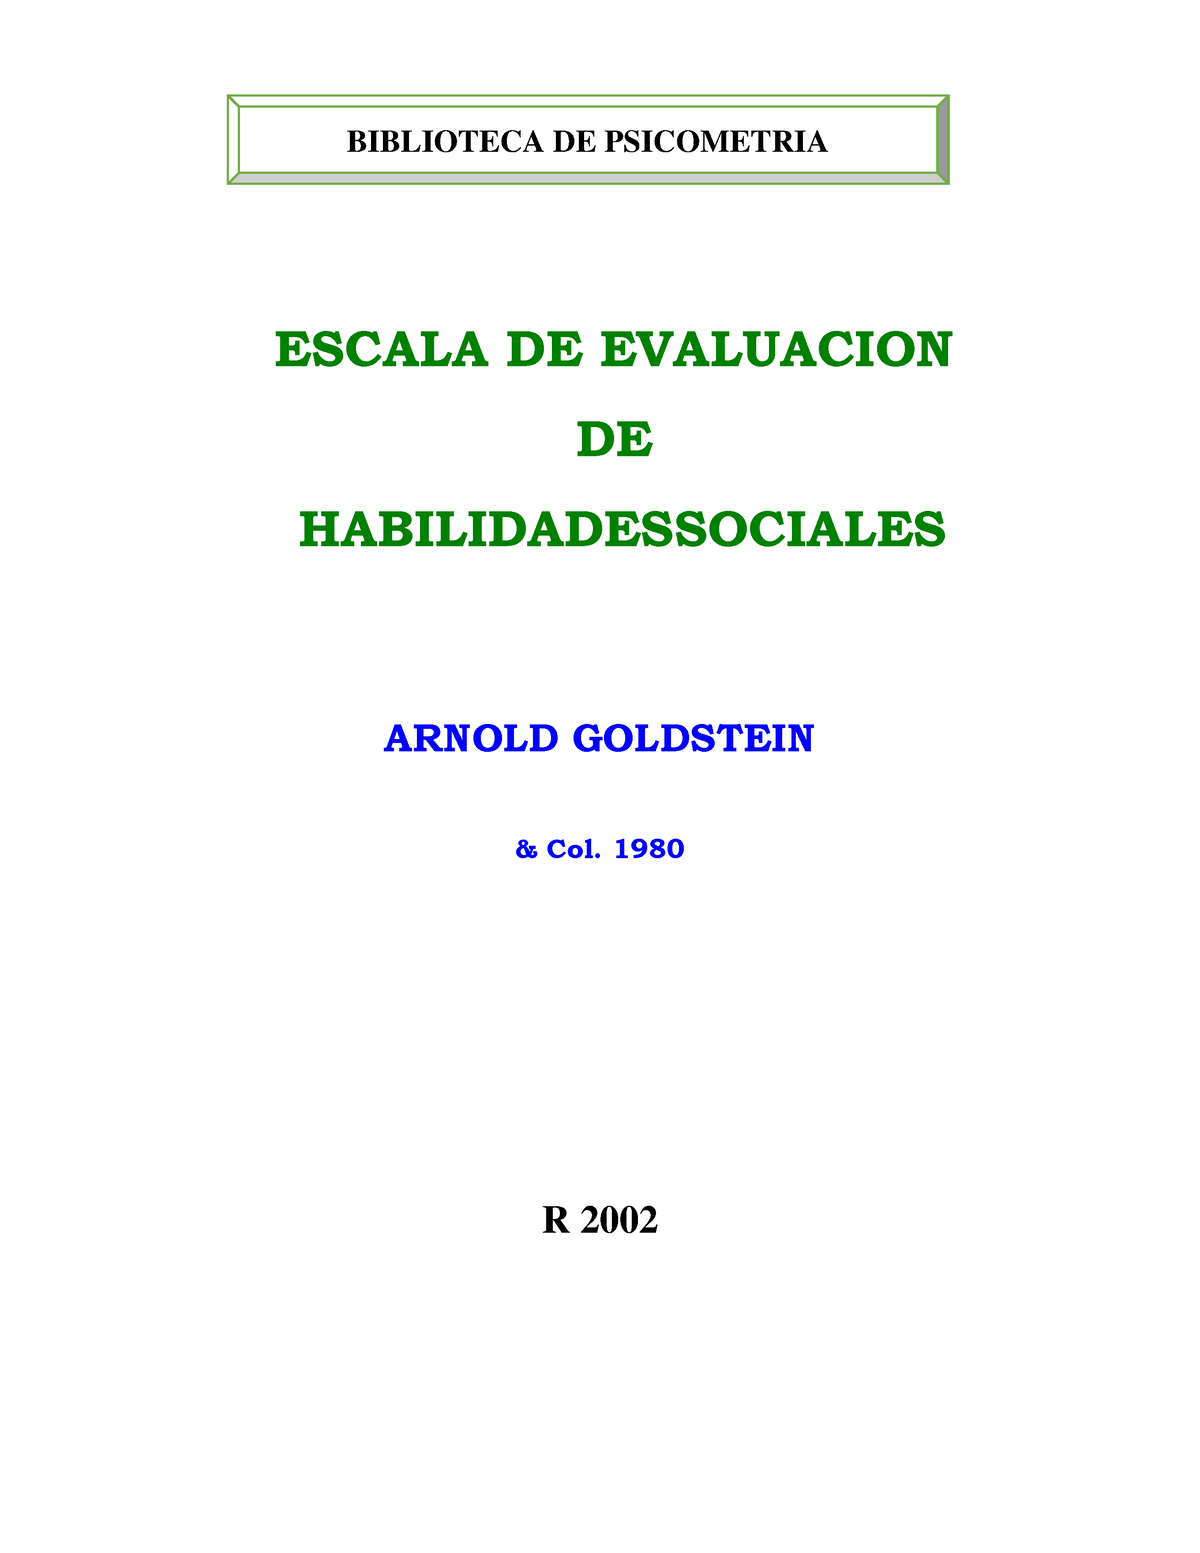 Escala De Evaluacion De Habilidades Socia Escala De Evaluacion De Habilidadessociales Arnold 0197